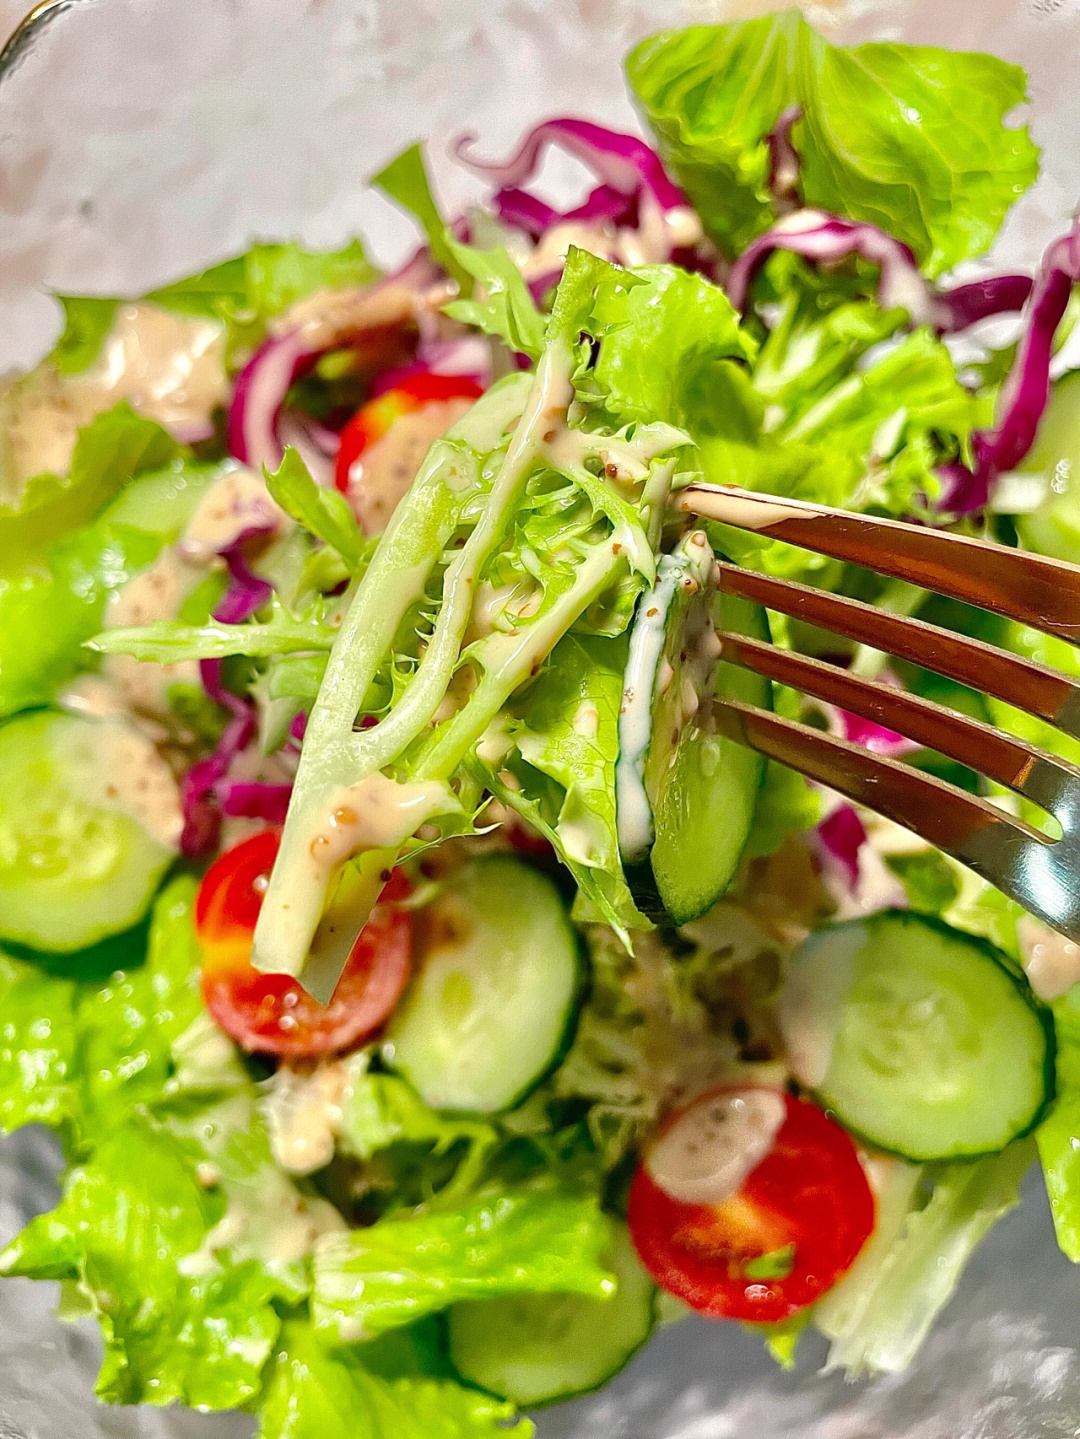 92减脂期必备美食让你越吃越瘦的蔬菜沙拉